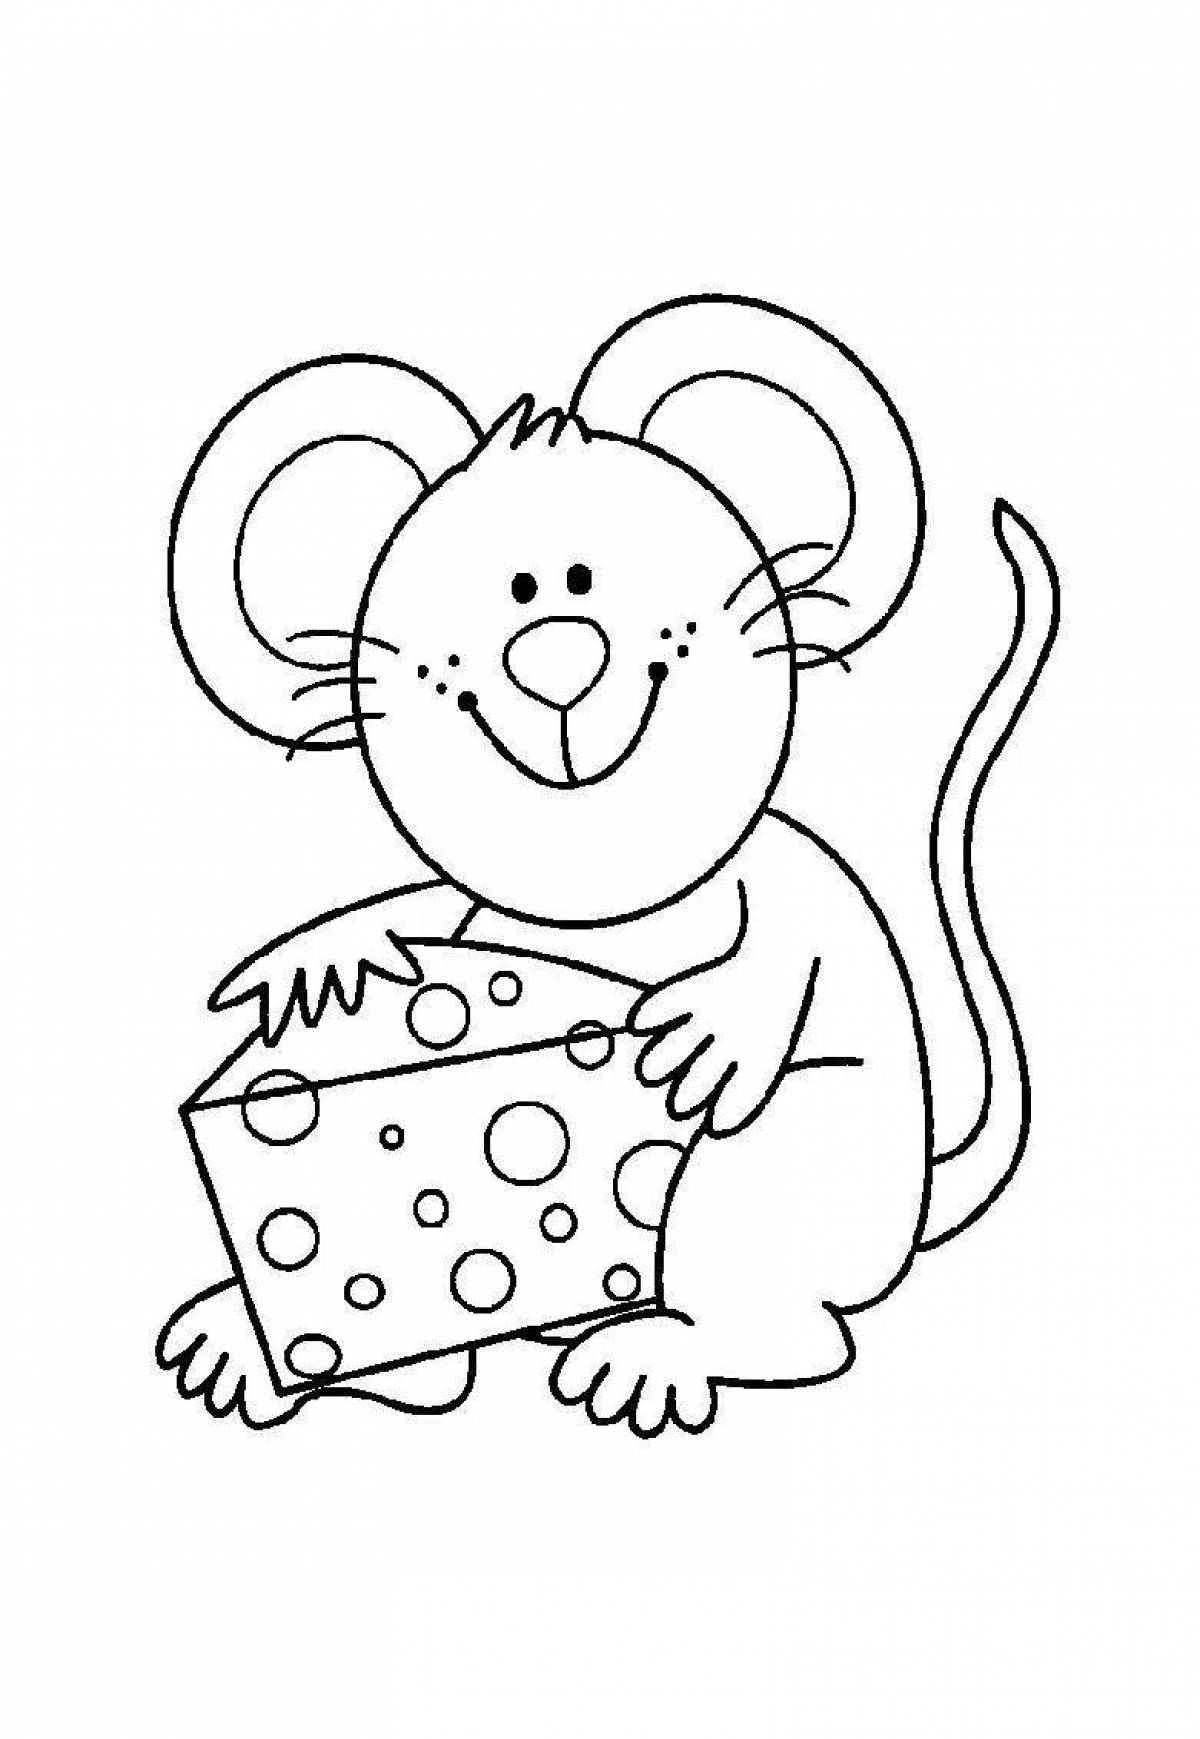 Раскраска мышь распечатать. Раскраска мышка. Мышь раскраска для детей. Мышонок раскраска для детей. Мышка раскраска для детей.